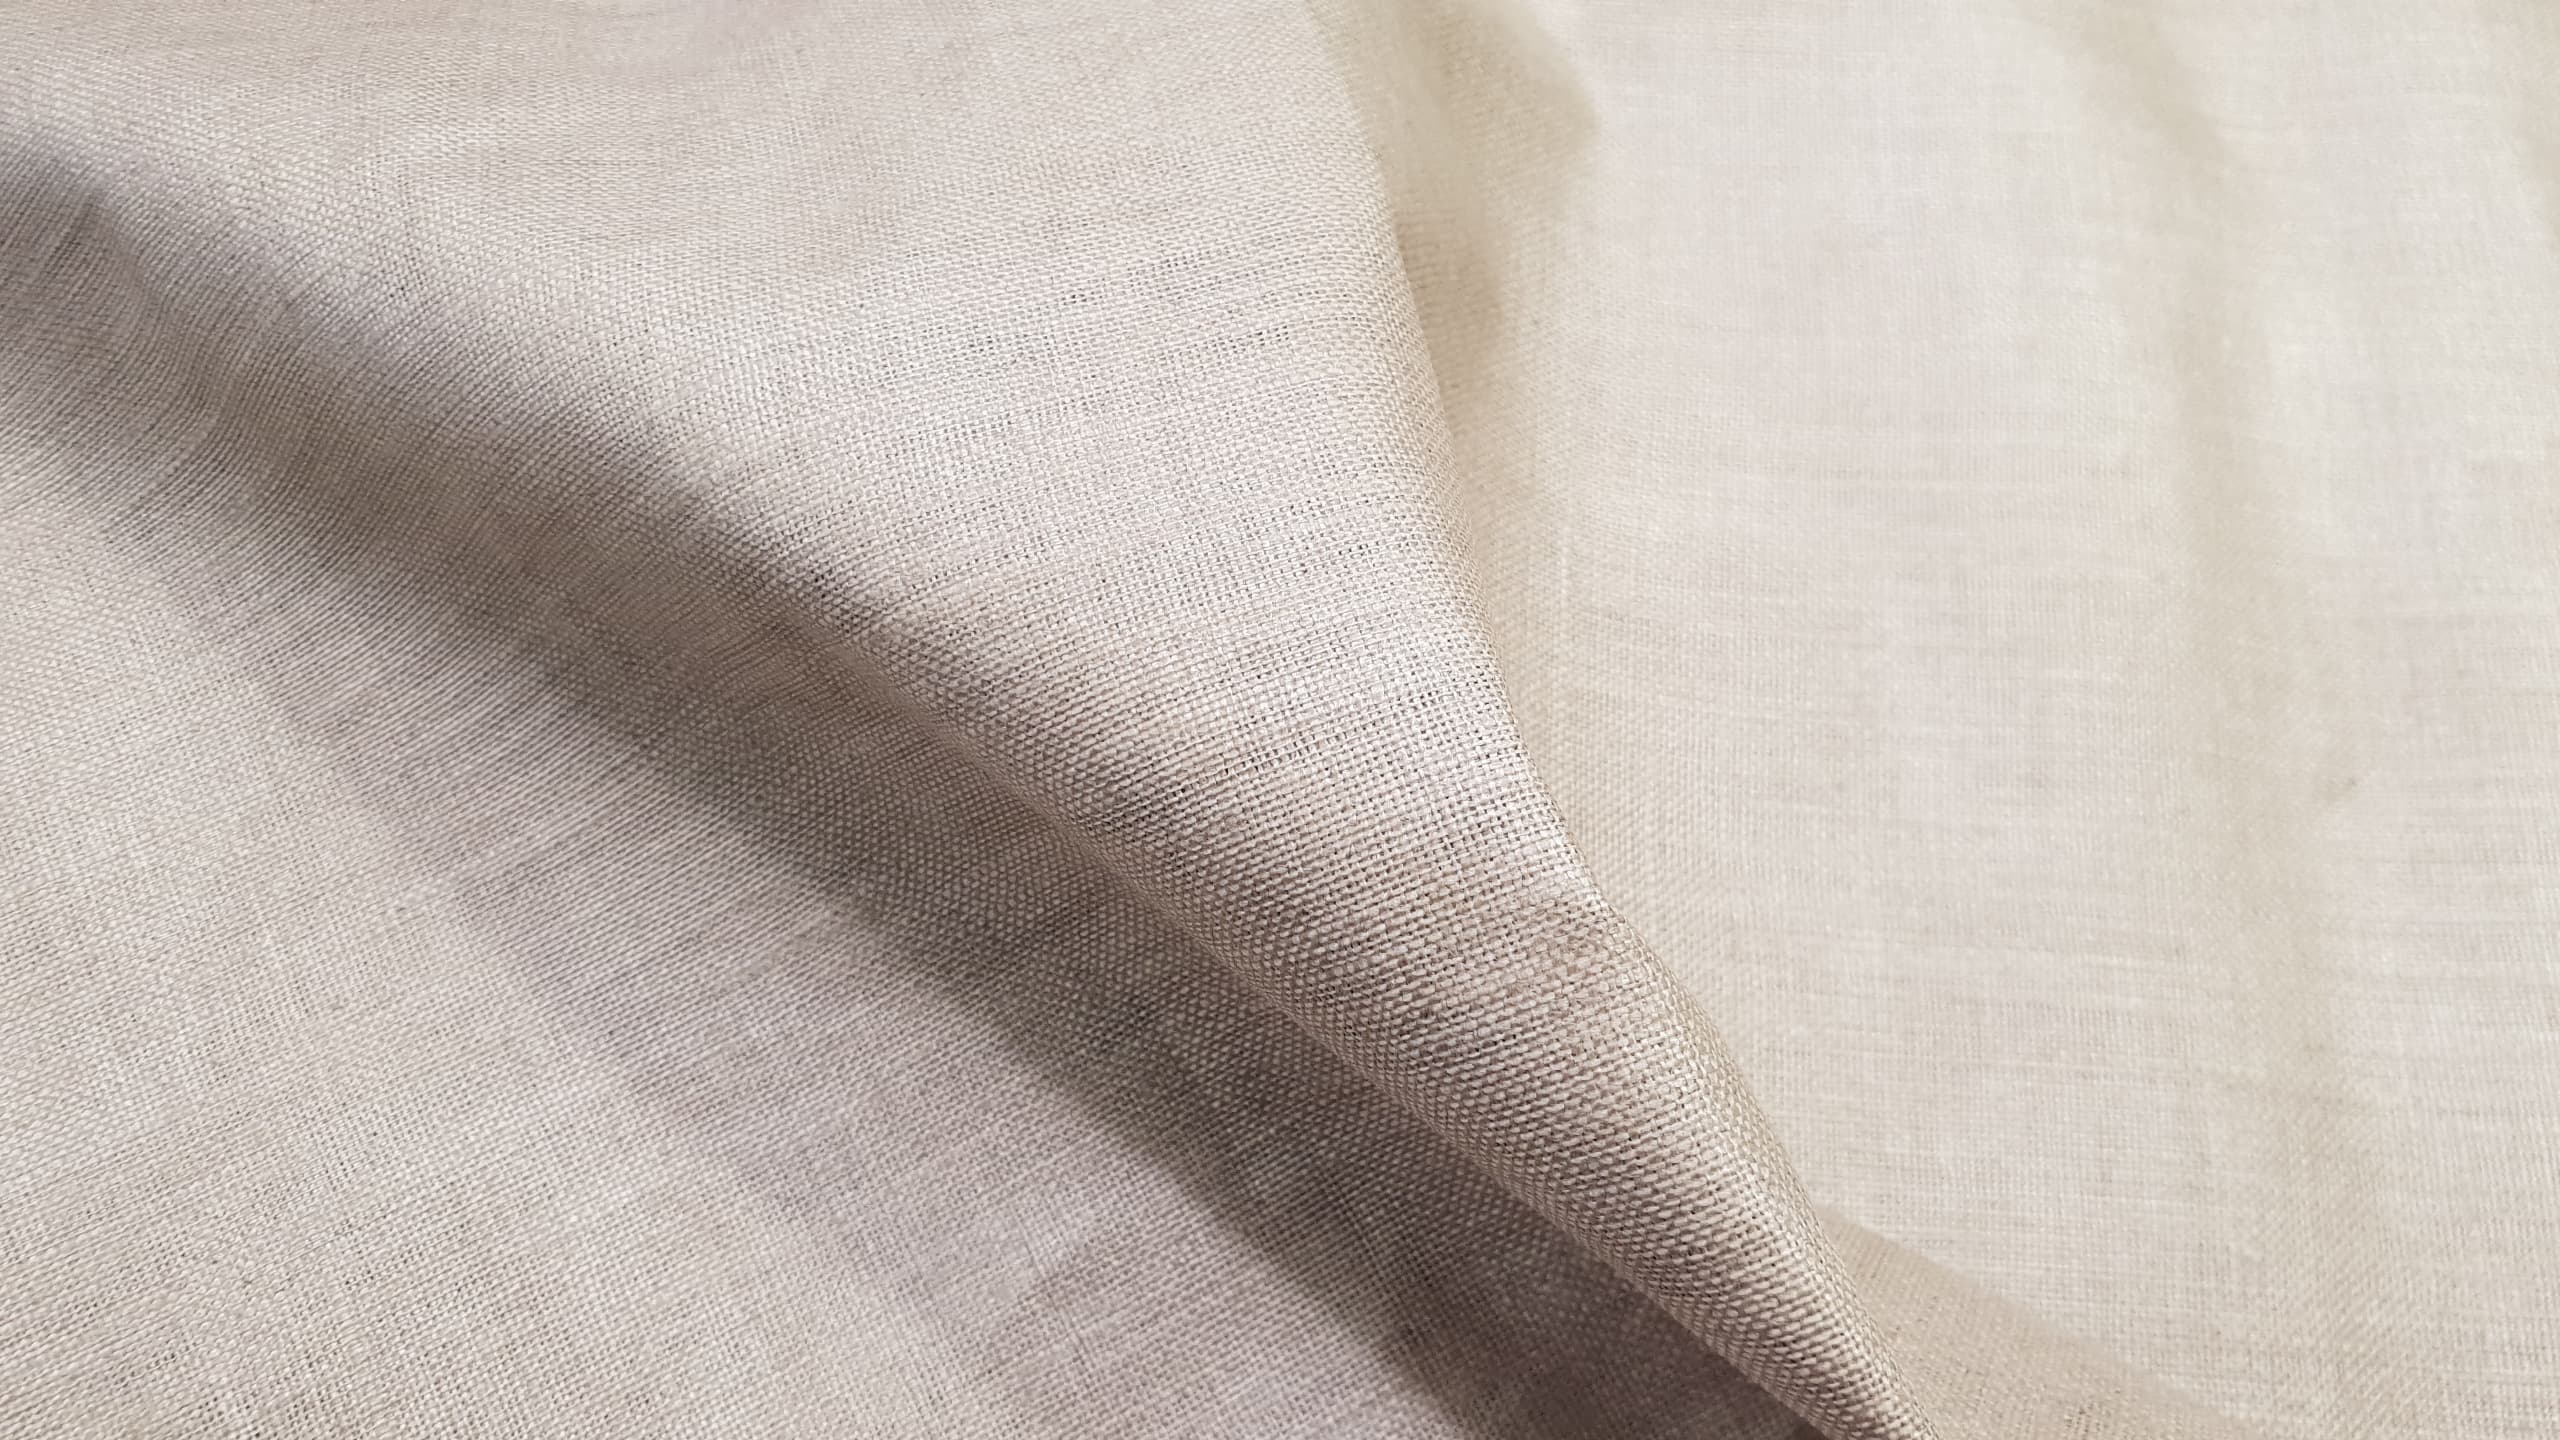 Vaxed calendered linen- natural linen